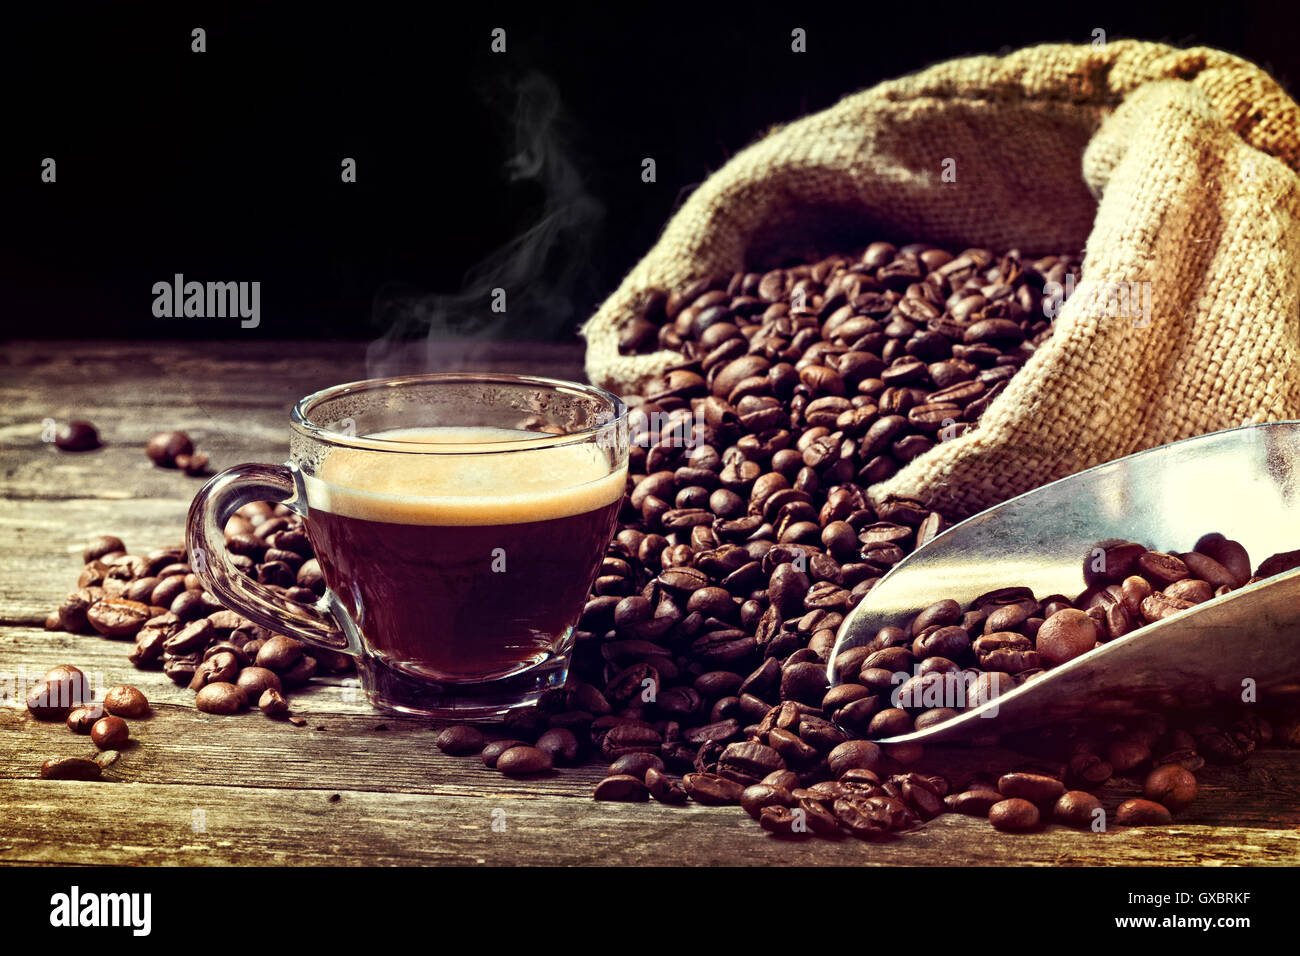 Grano de café espresso y real Foto de stock